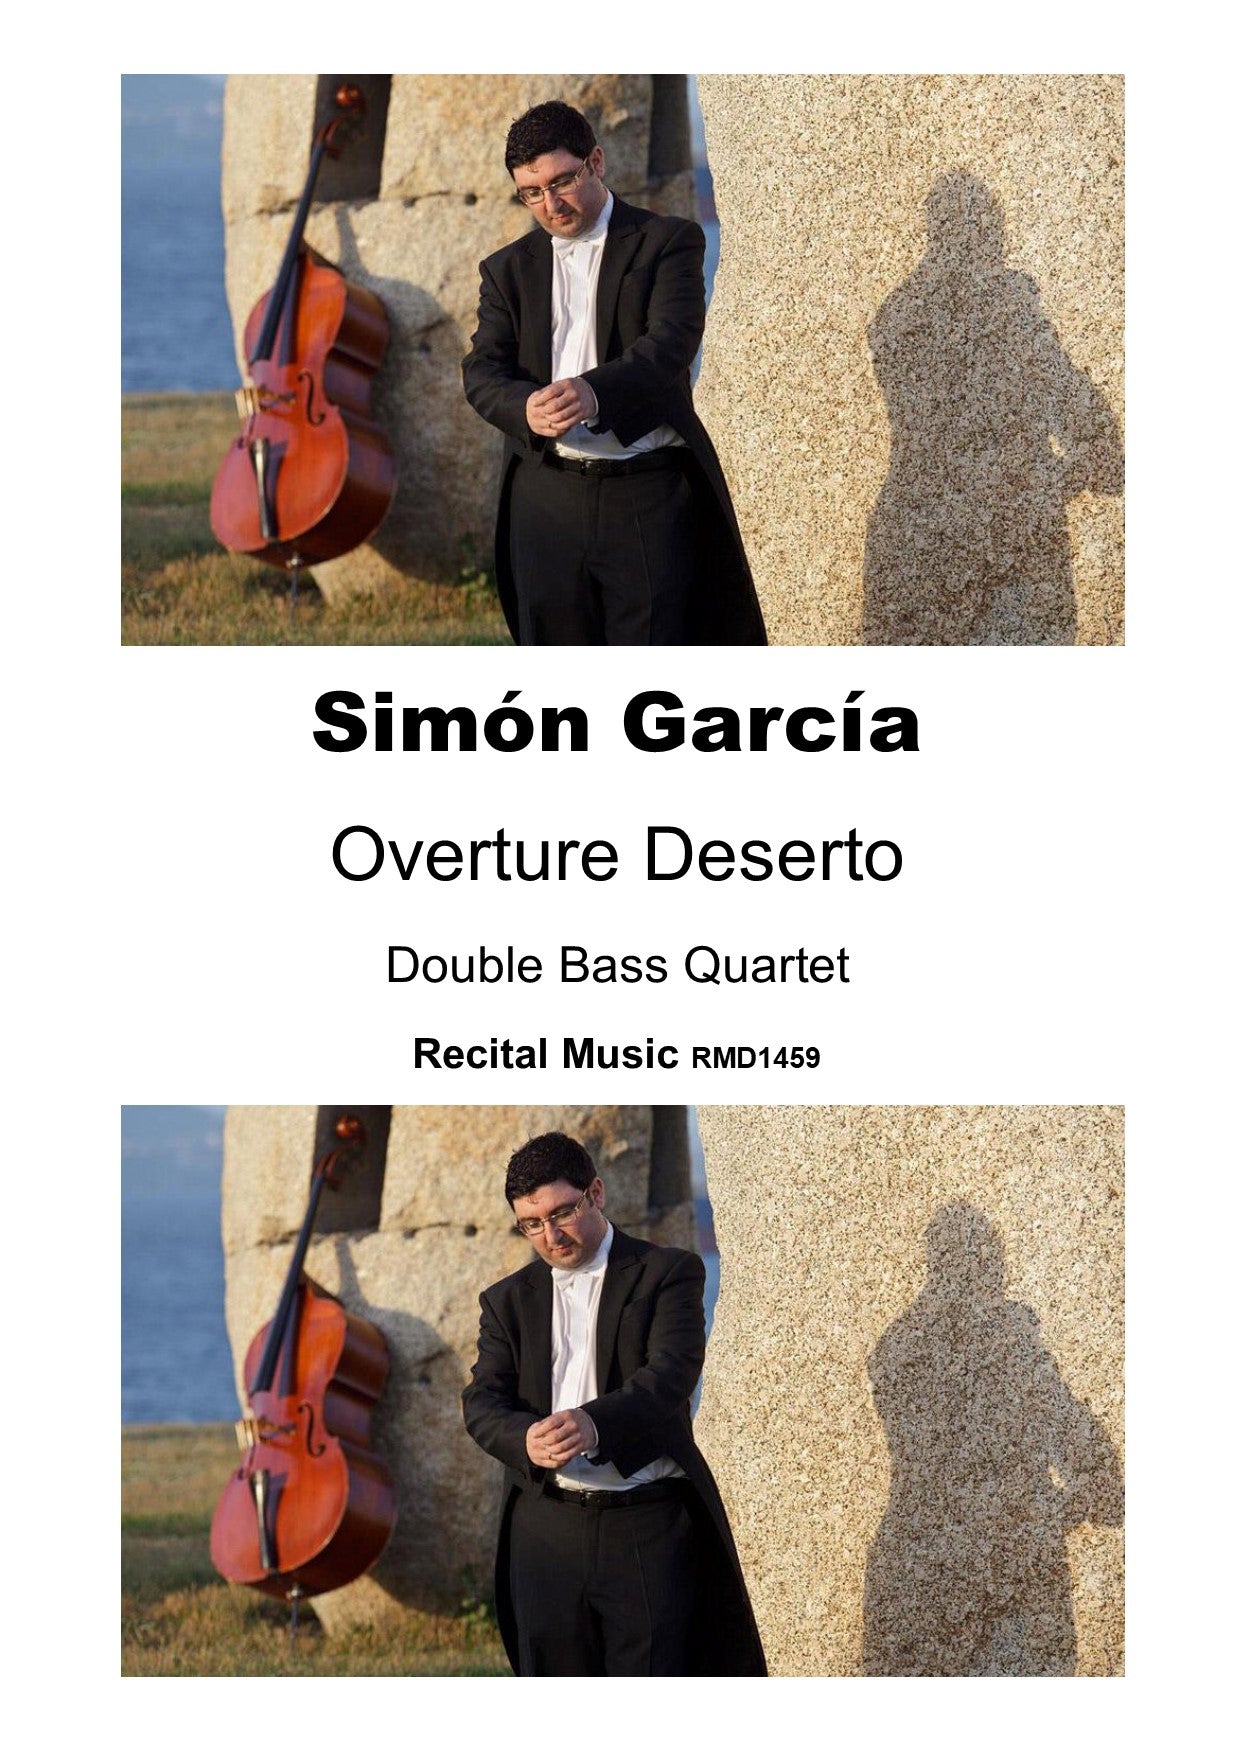 Simón García: Overture Deserto for double bass quartet